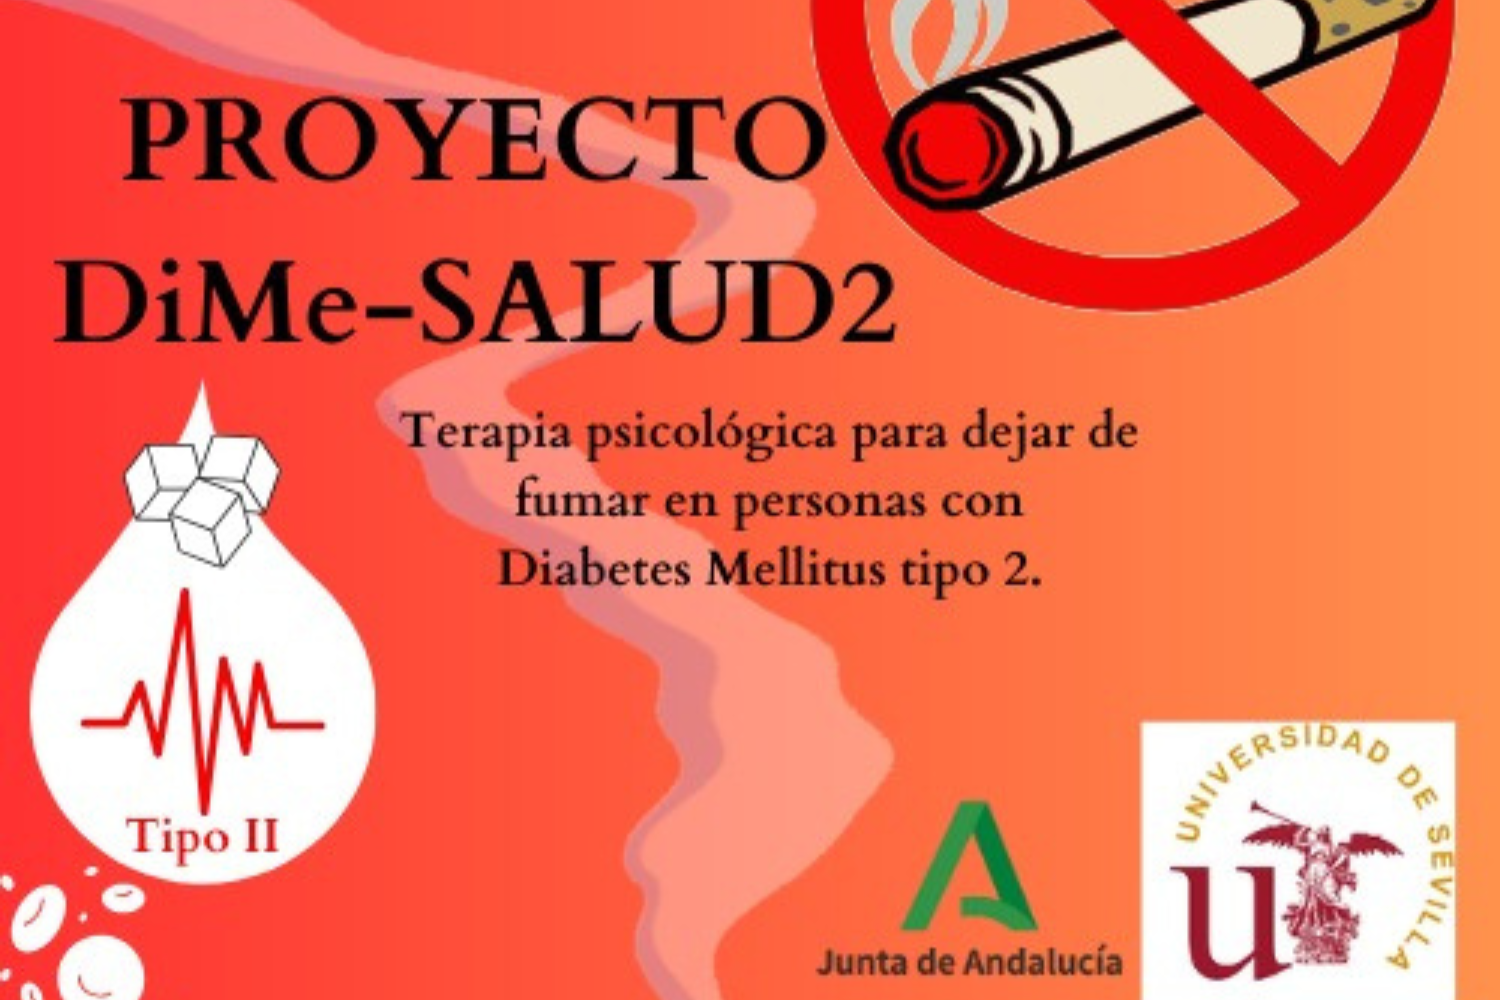 Cartel del proyecto DiMe-SALUD2